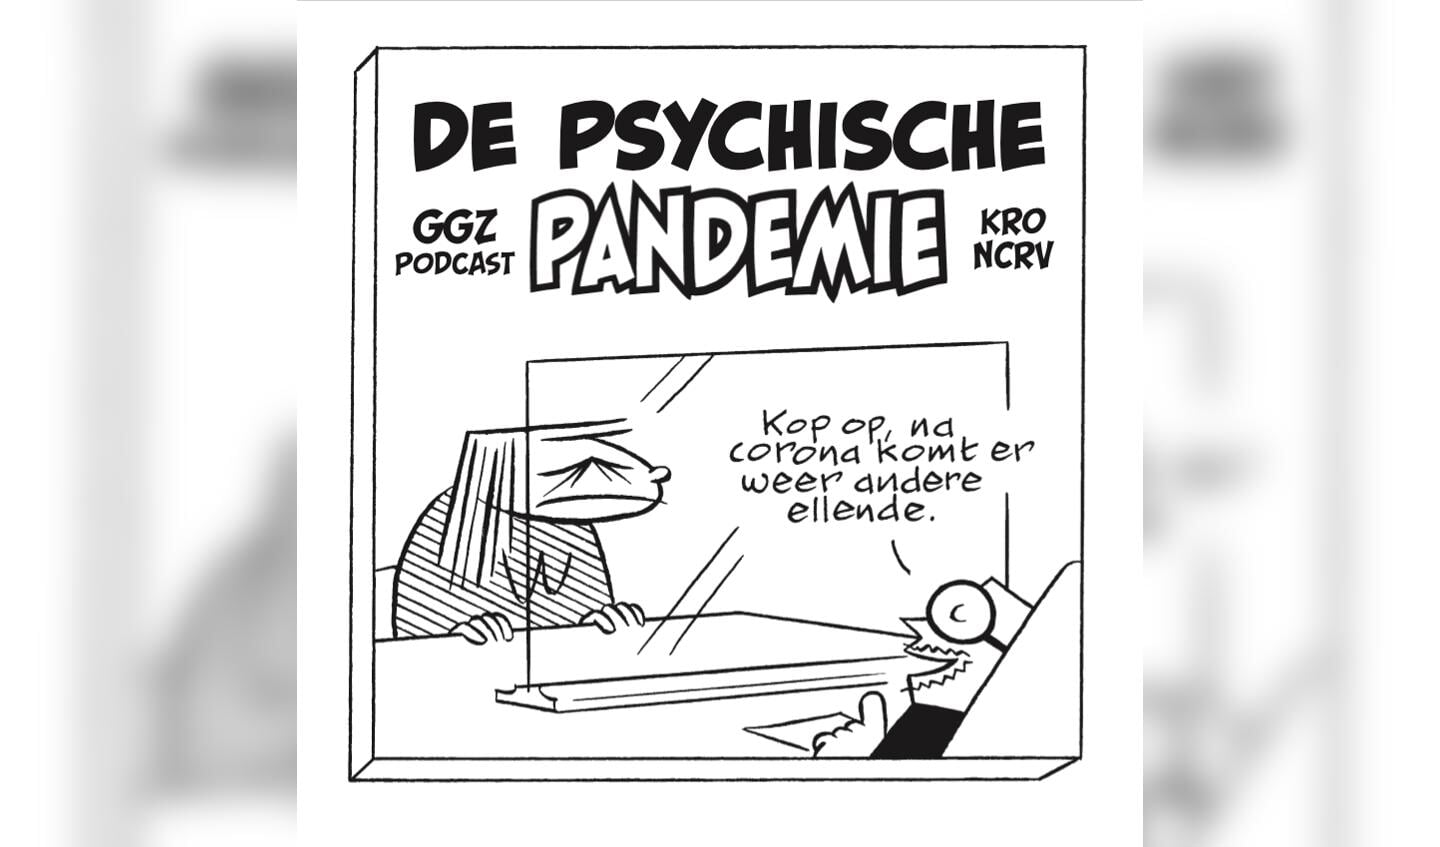 Vincent van Gogh in Venray neemt deel aan de podcastserie De psychische pandemie.